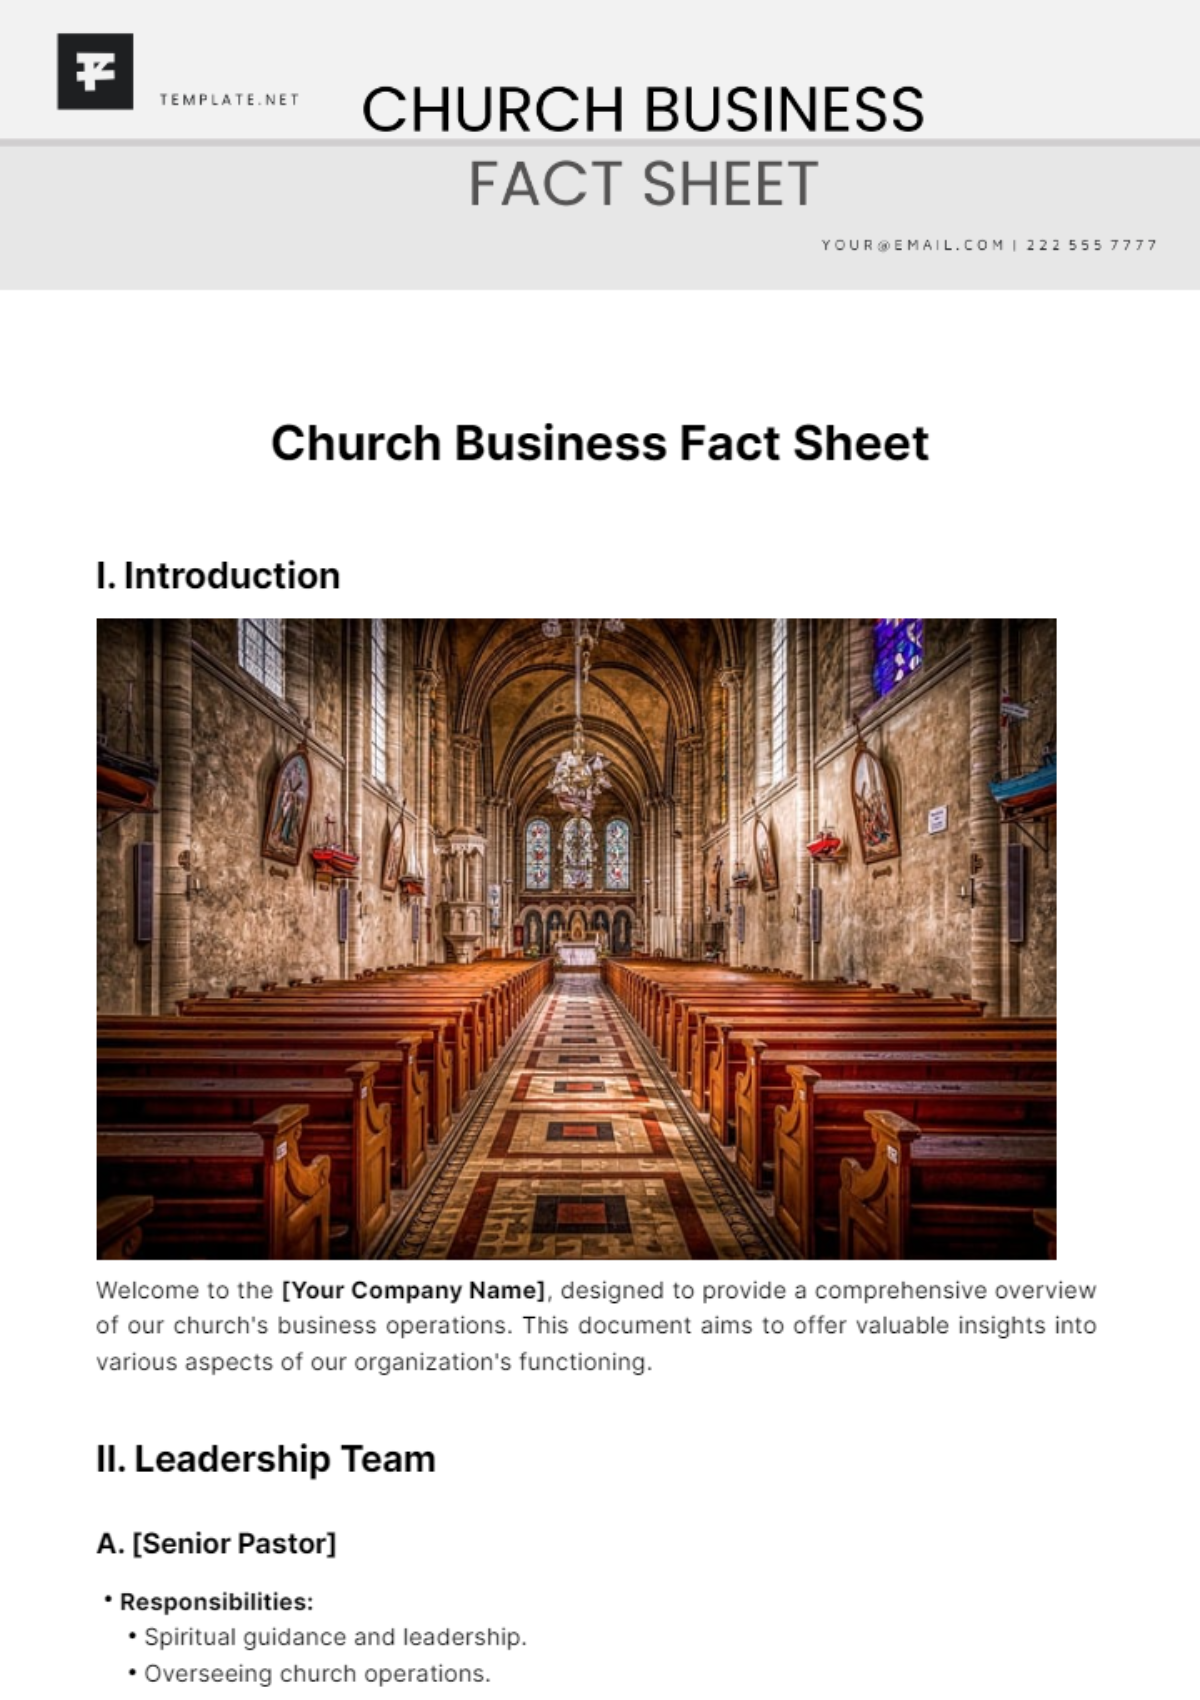 Church Business Fact Sheet Template